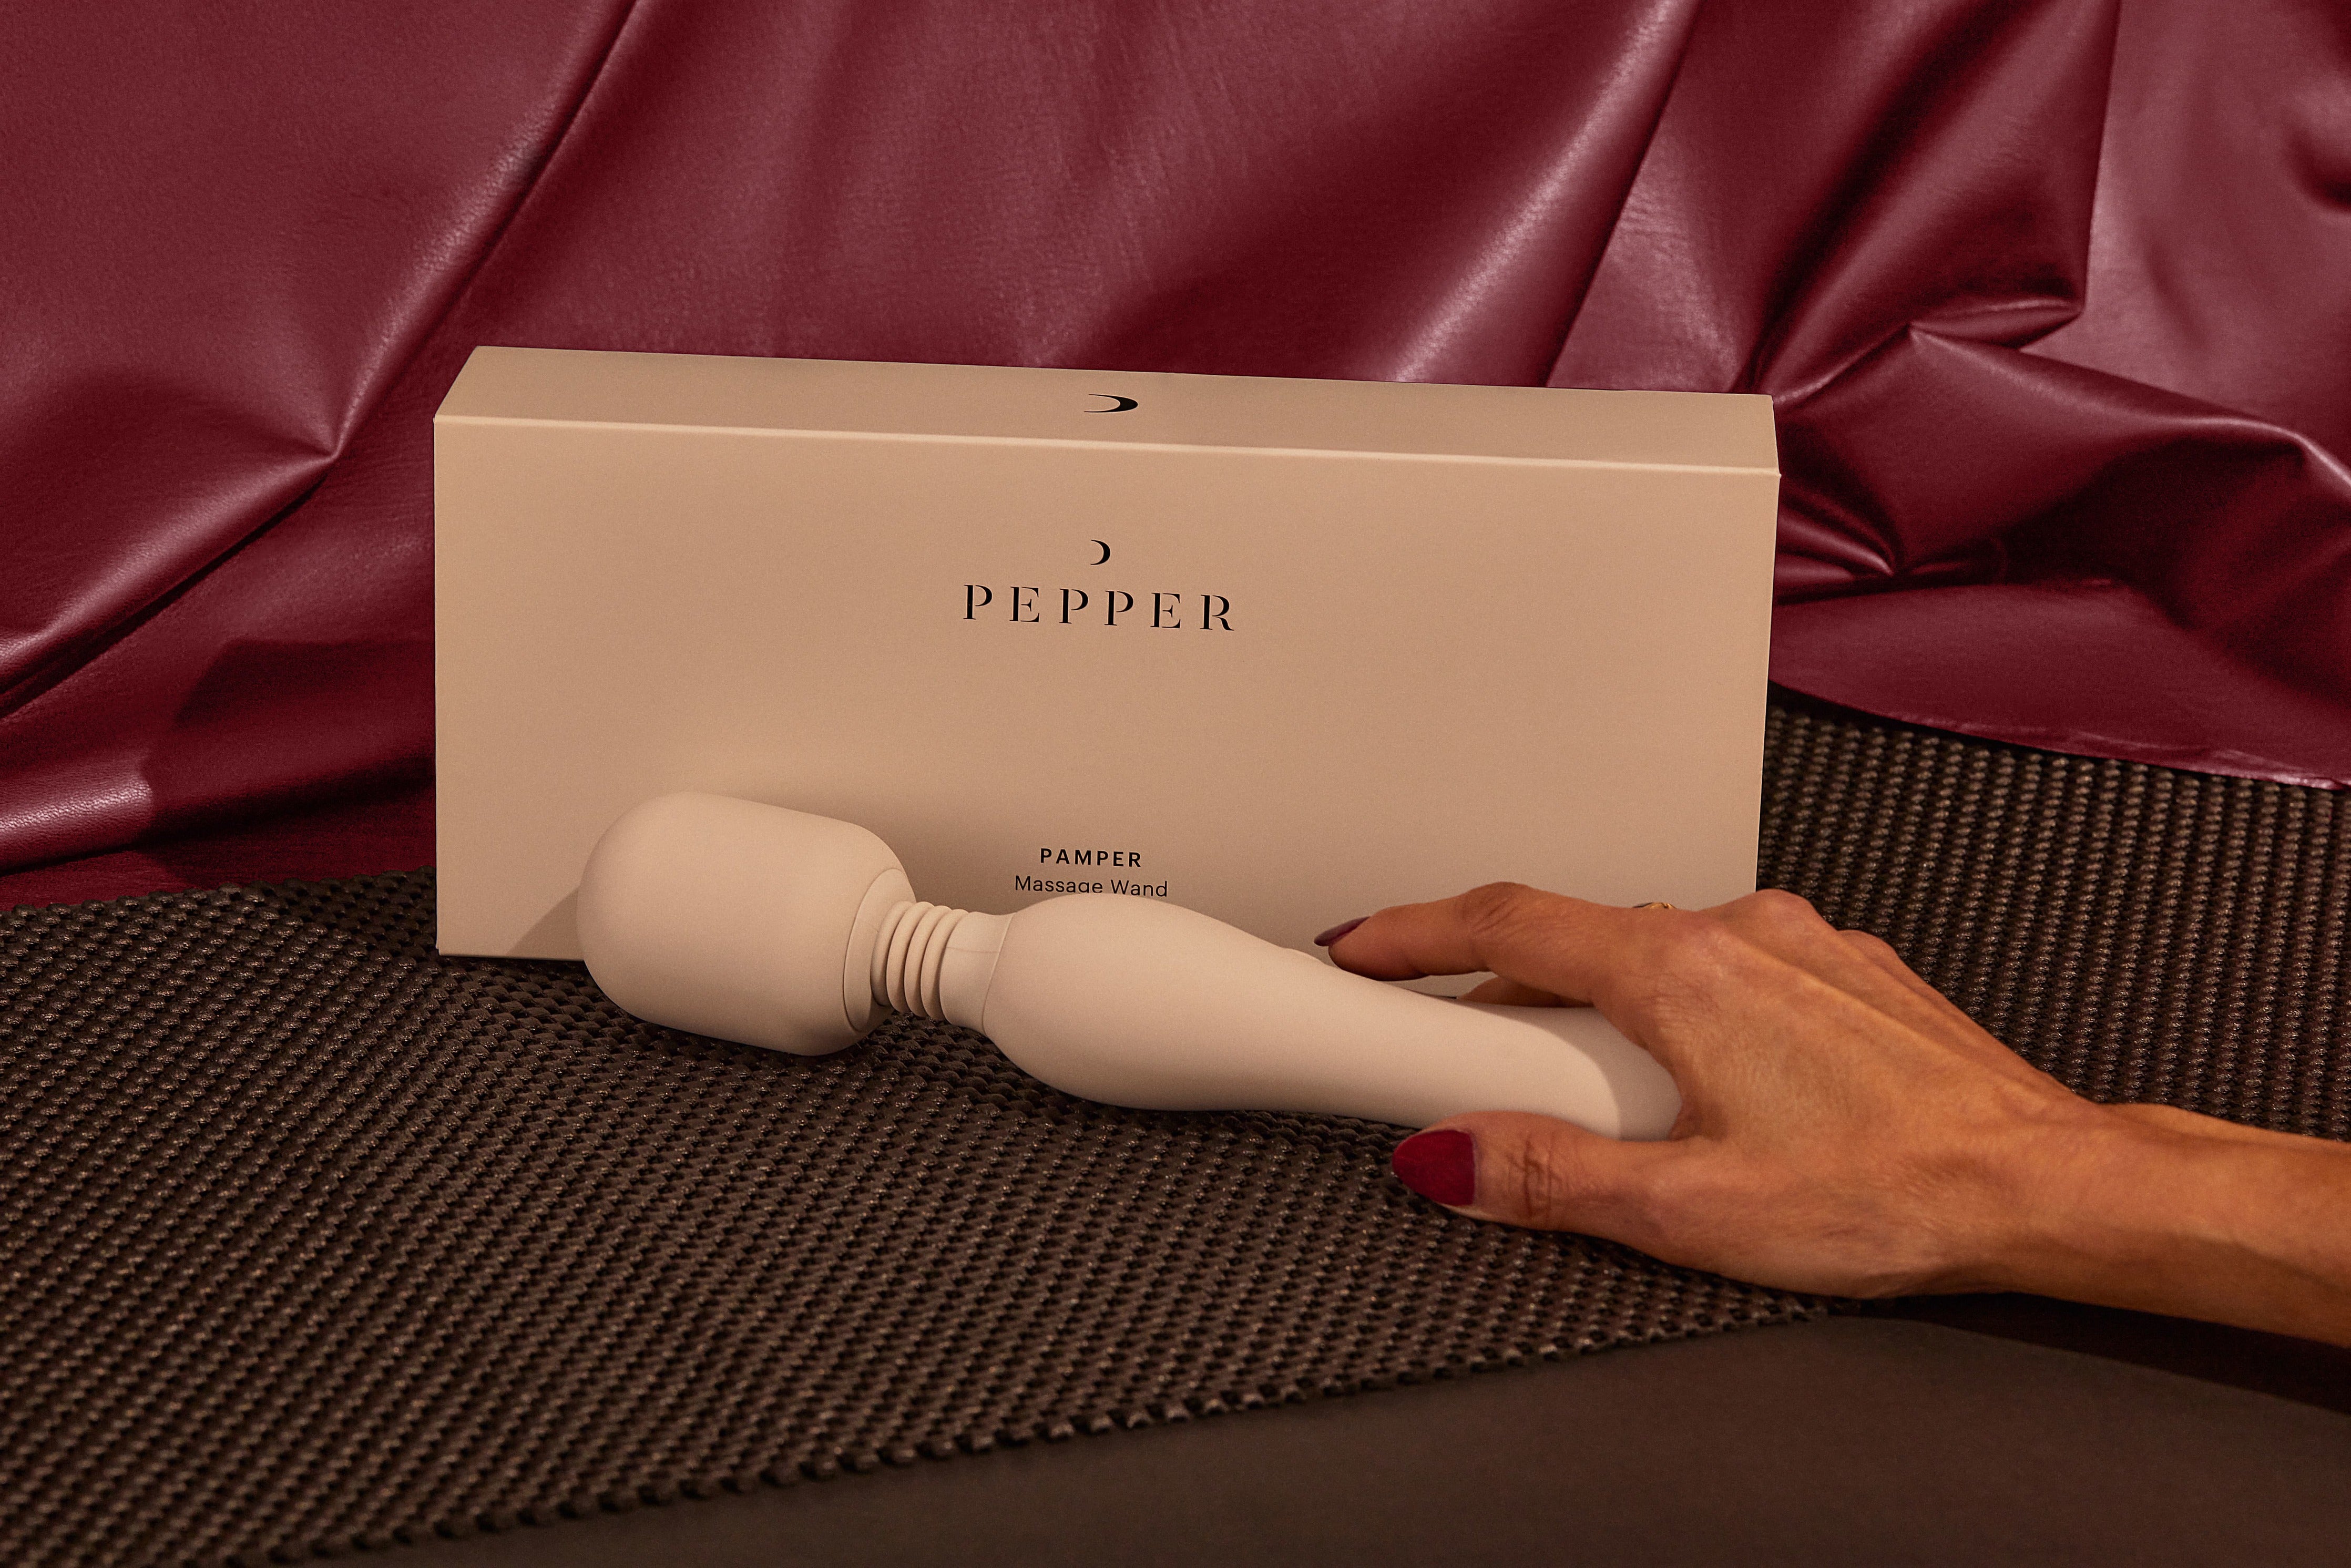 Pepper Pamper Massage Wand